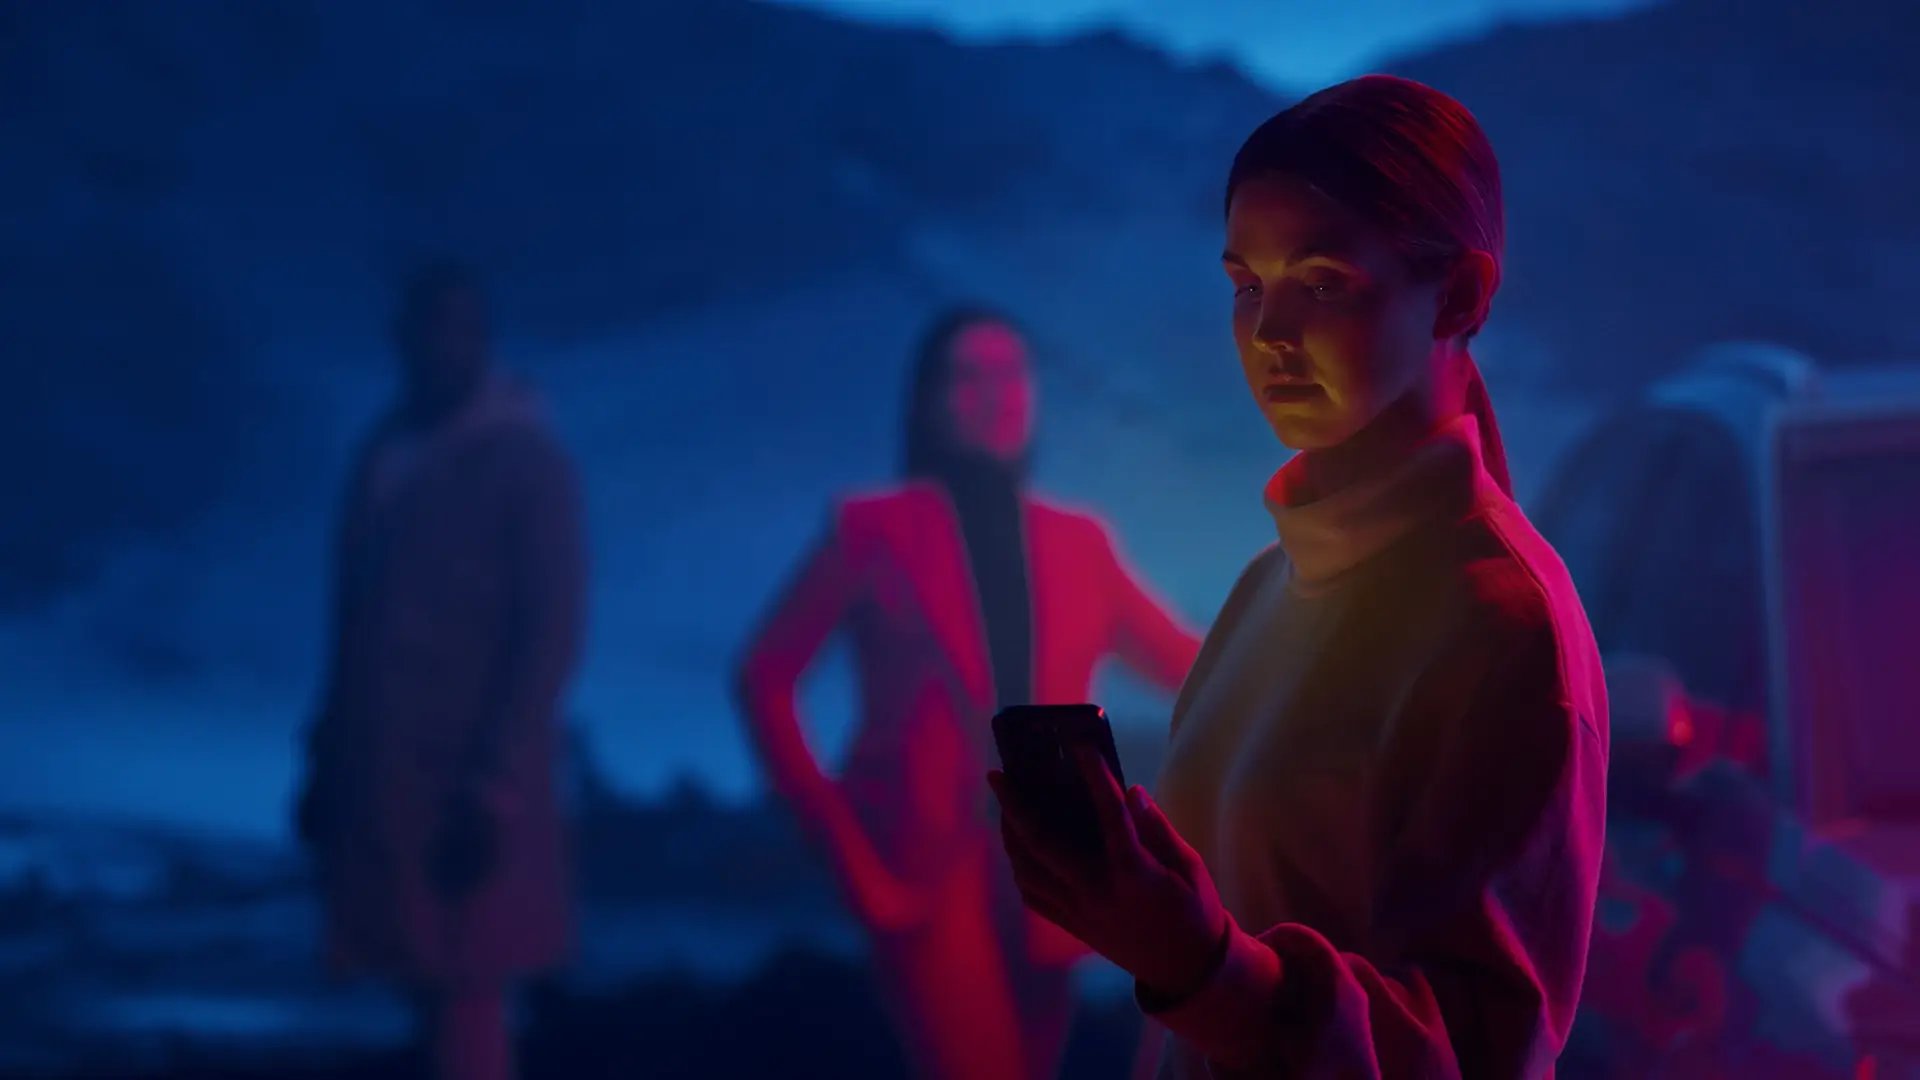 Naispuolinen henkilö selää älypuhelinta latausasemalla taustalla vuoria